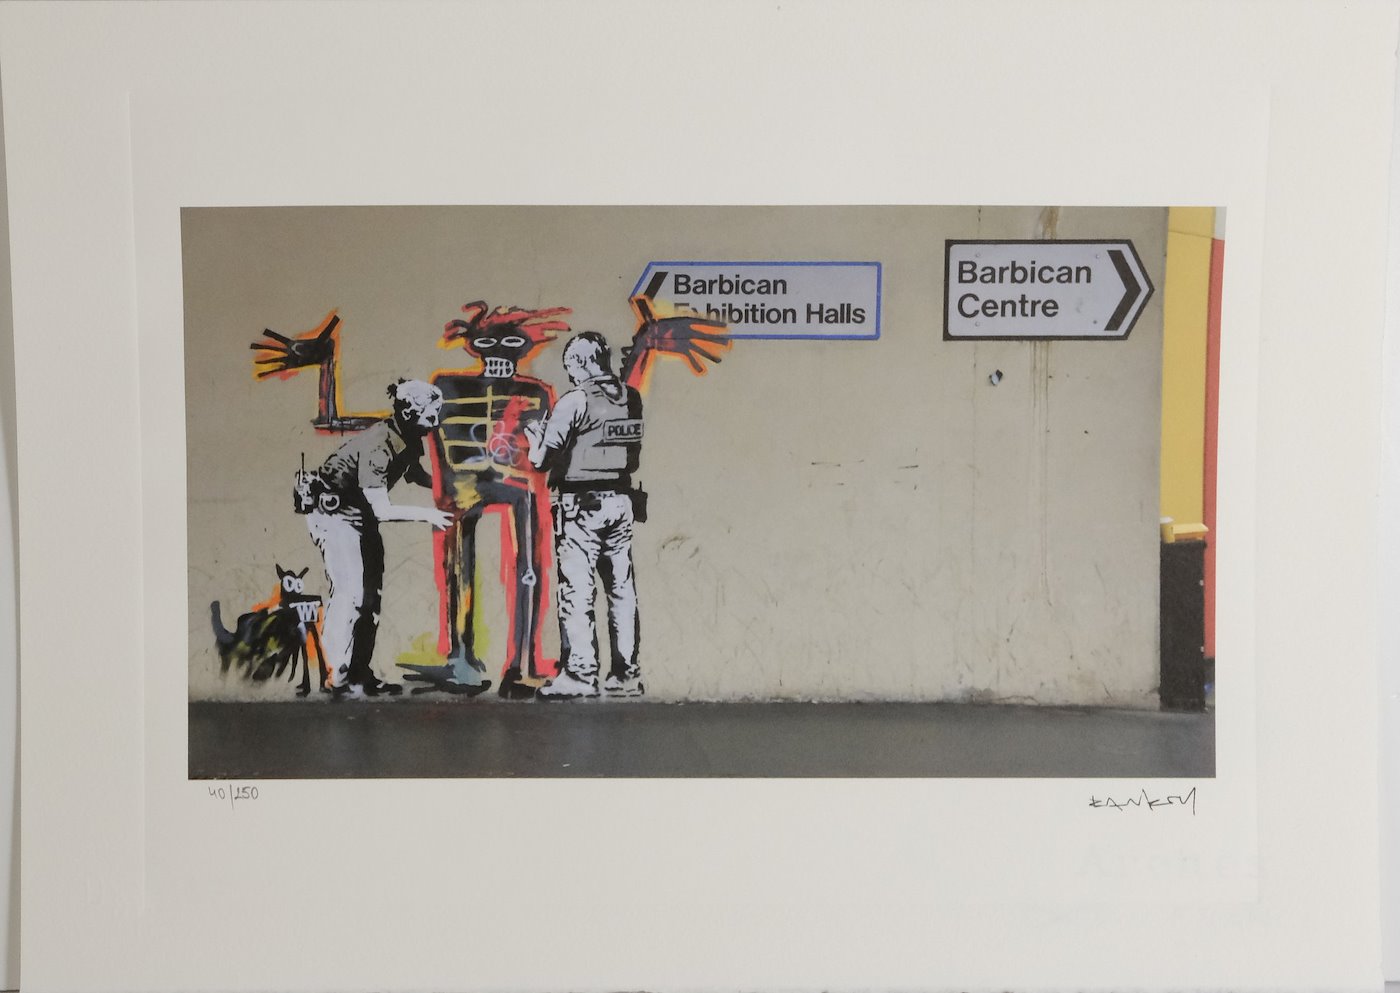 Banksy - Barbican